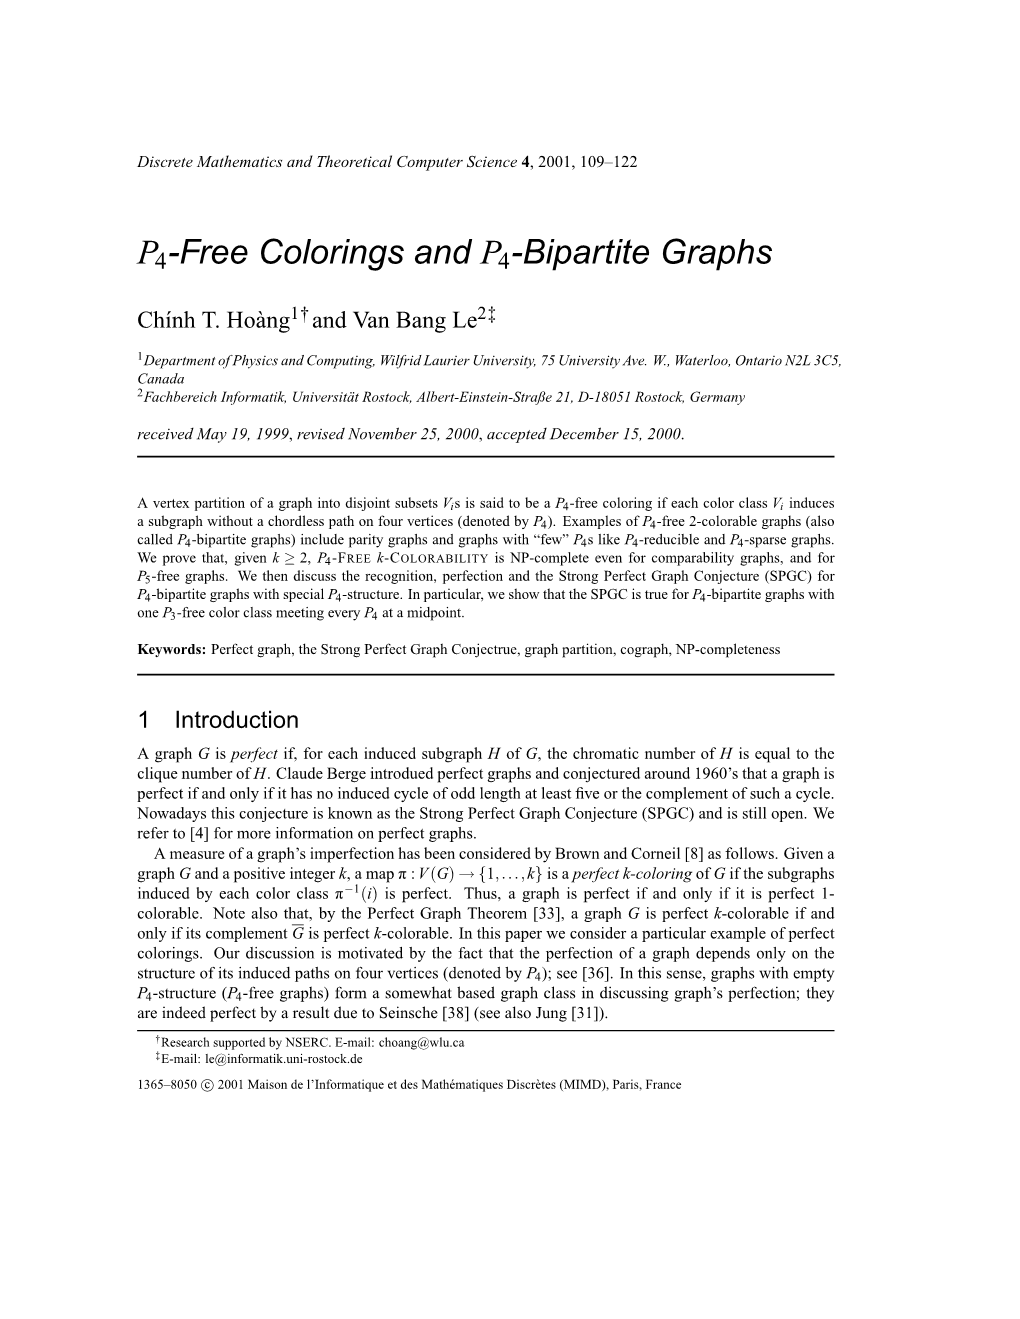 P4-Free Colorings and P4-Bipartite Graphs